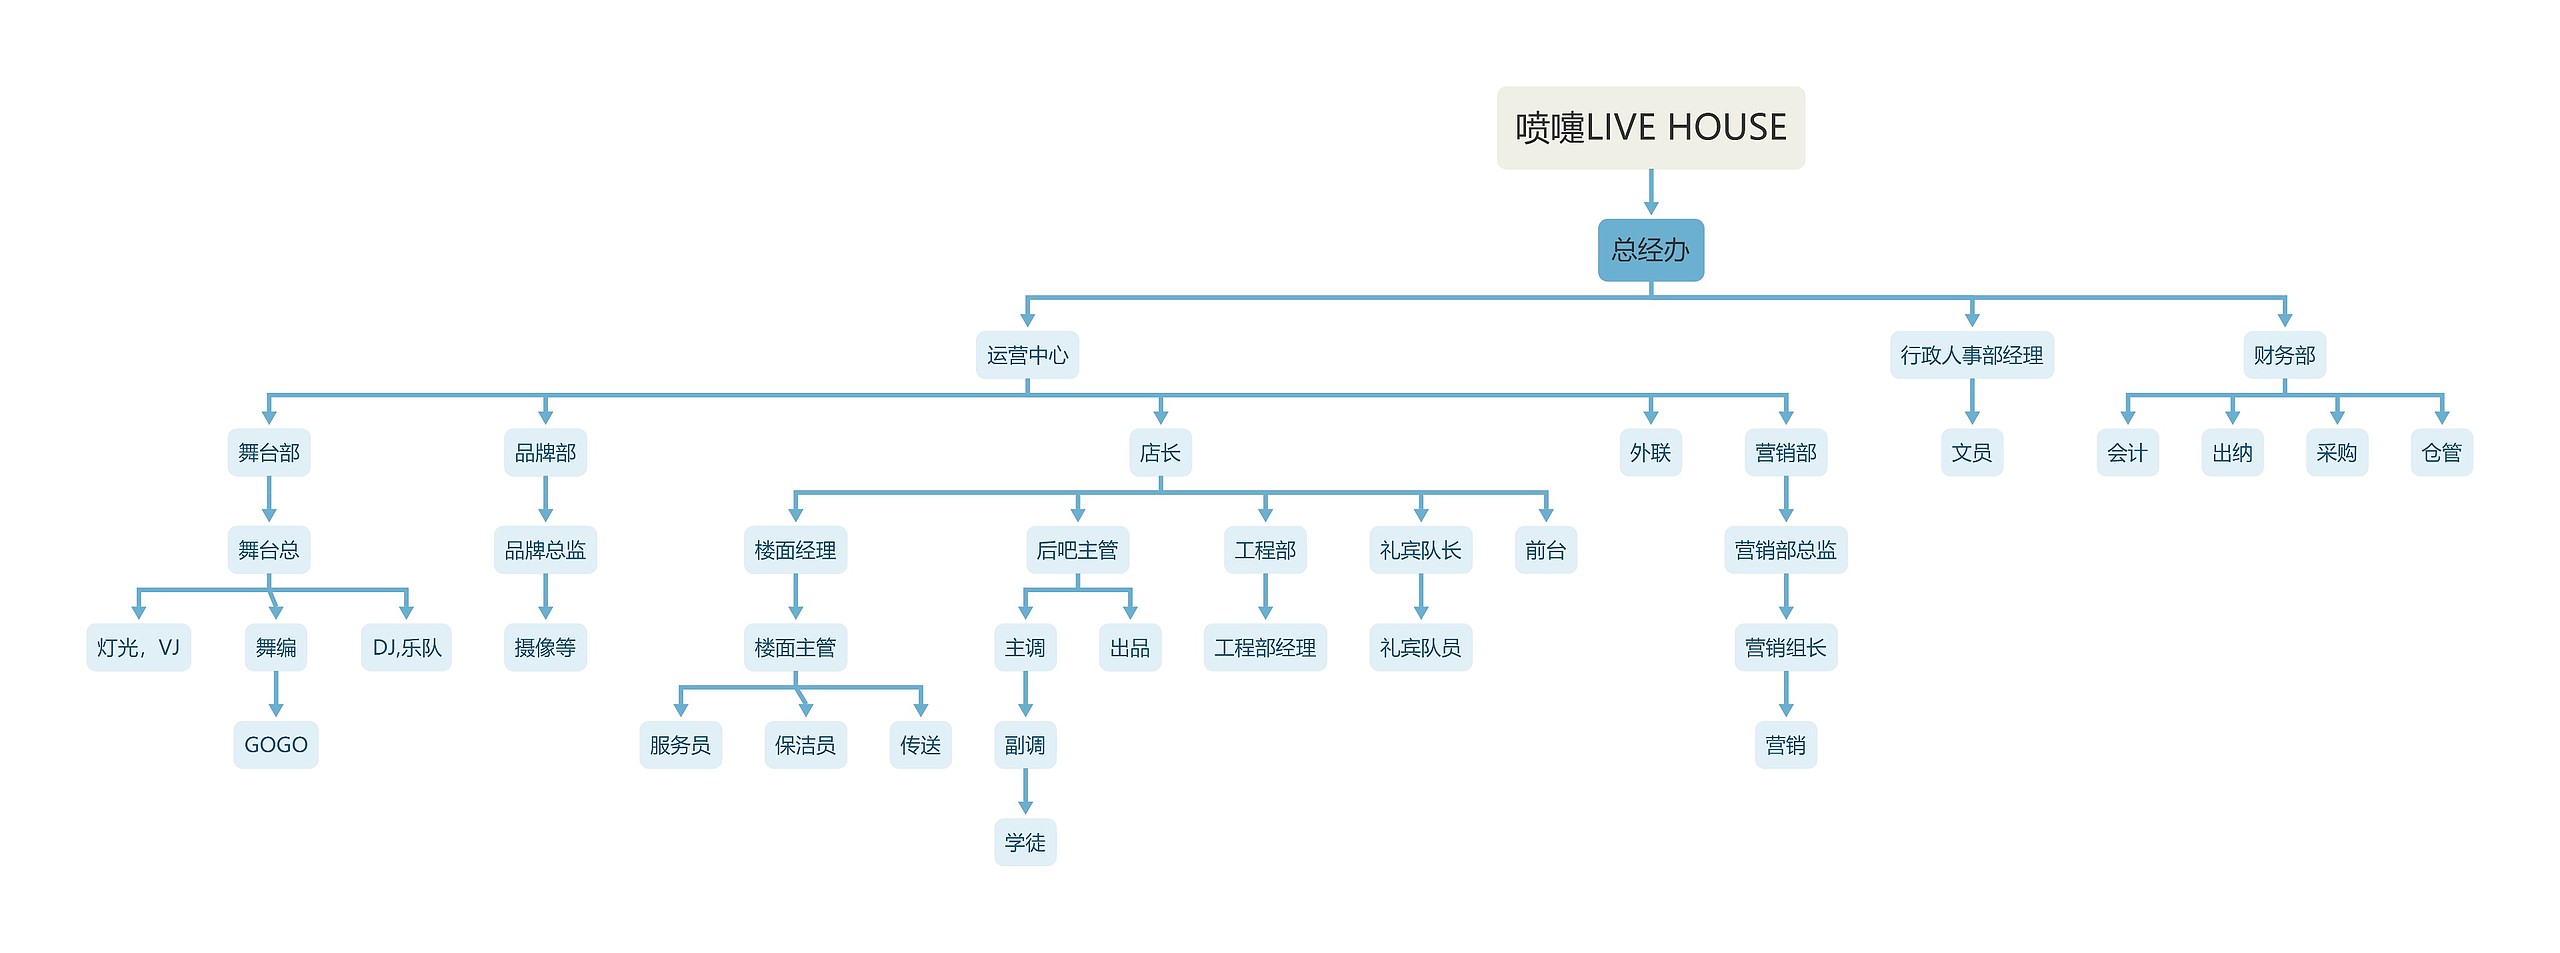 喷嚏LIVE HOUSE组织架构图思维导图